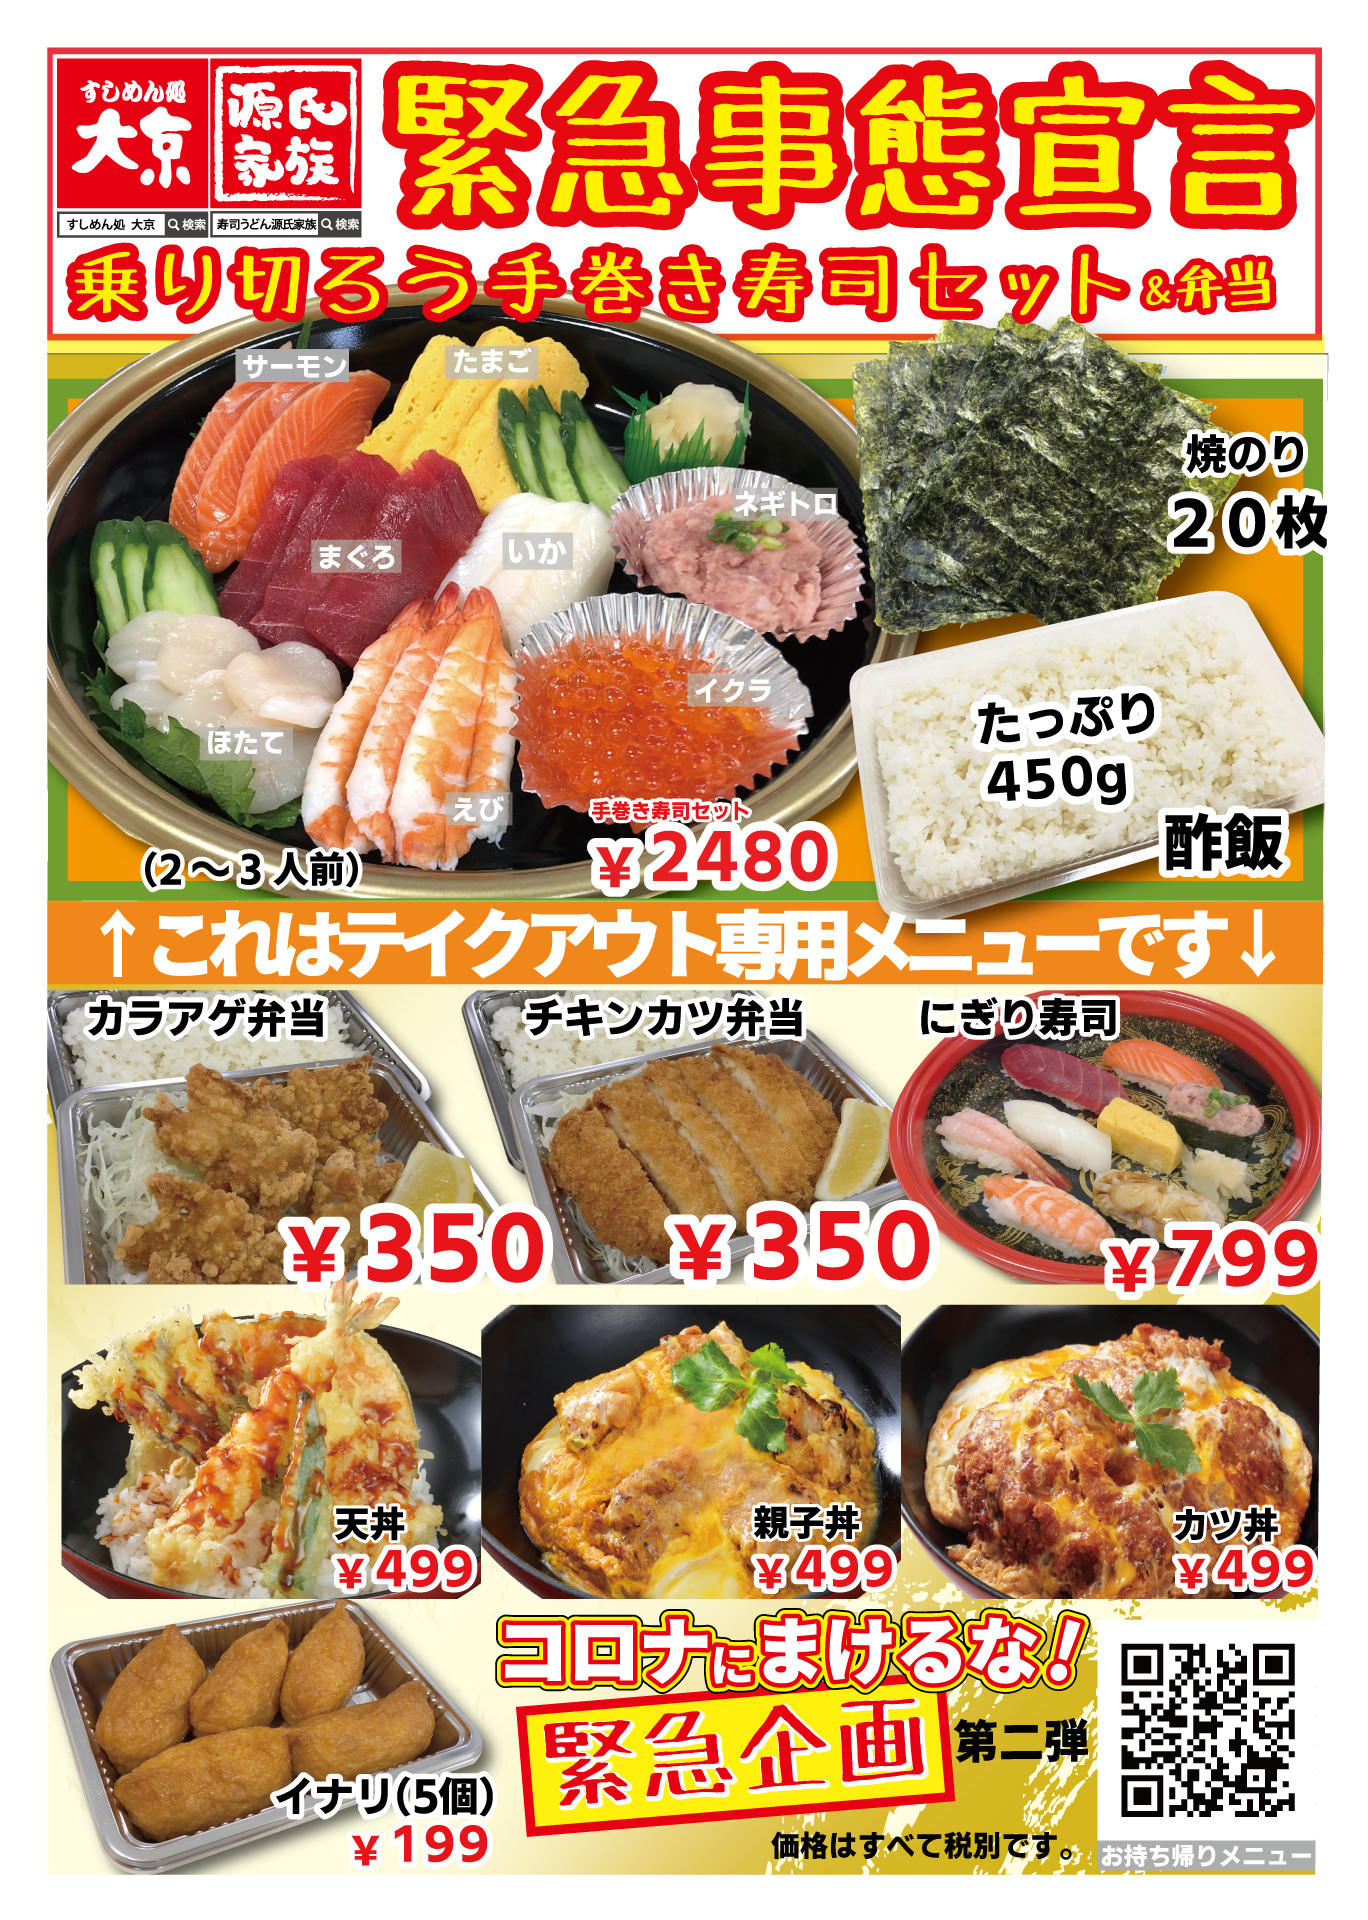 熊本県合志市産 スーパーフード「アマランサスローストパウダー」
数量限定で発売！料理に混ぜるだけで豊富な栄養素を手軽に摂取